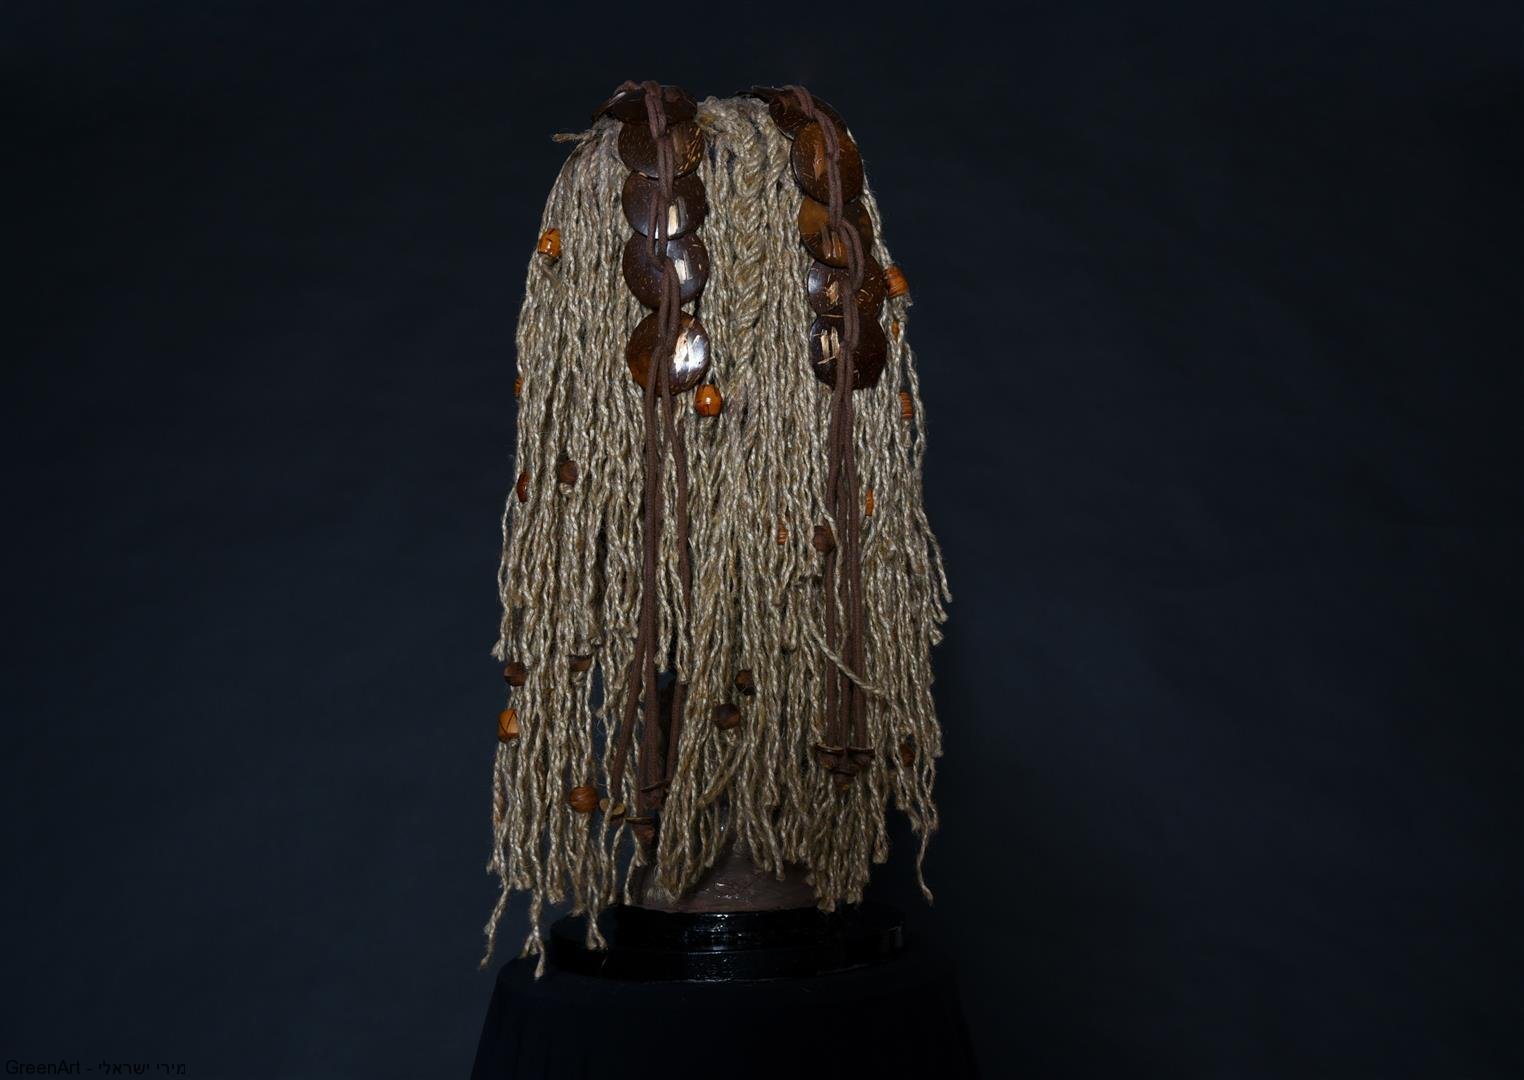 עיצוב השיער מחבלים וחרוזי עץ ישנים- אמנות המיחזור עם מסר לחברה